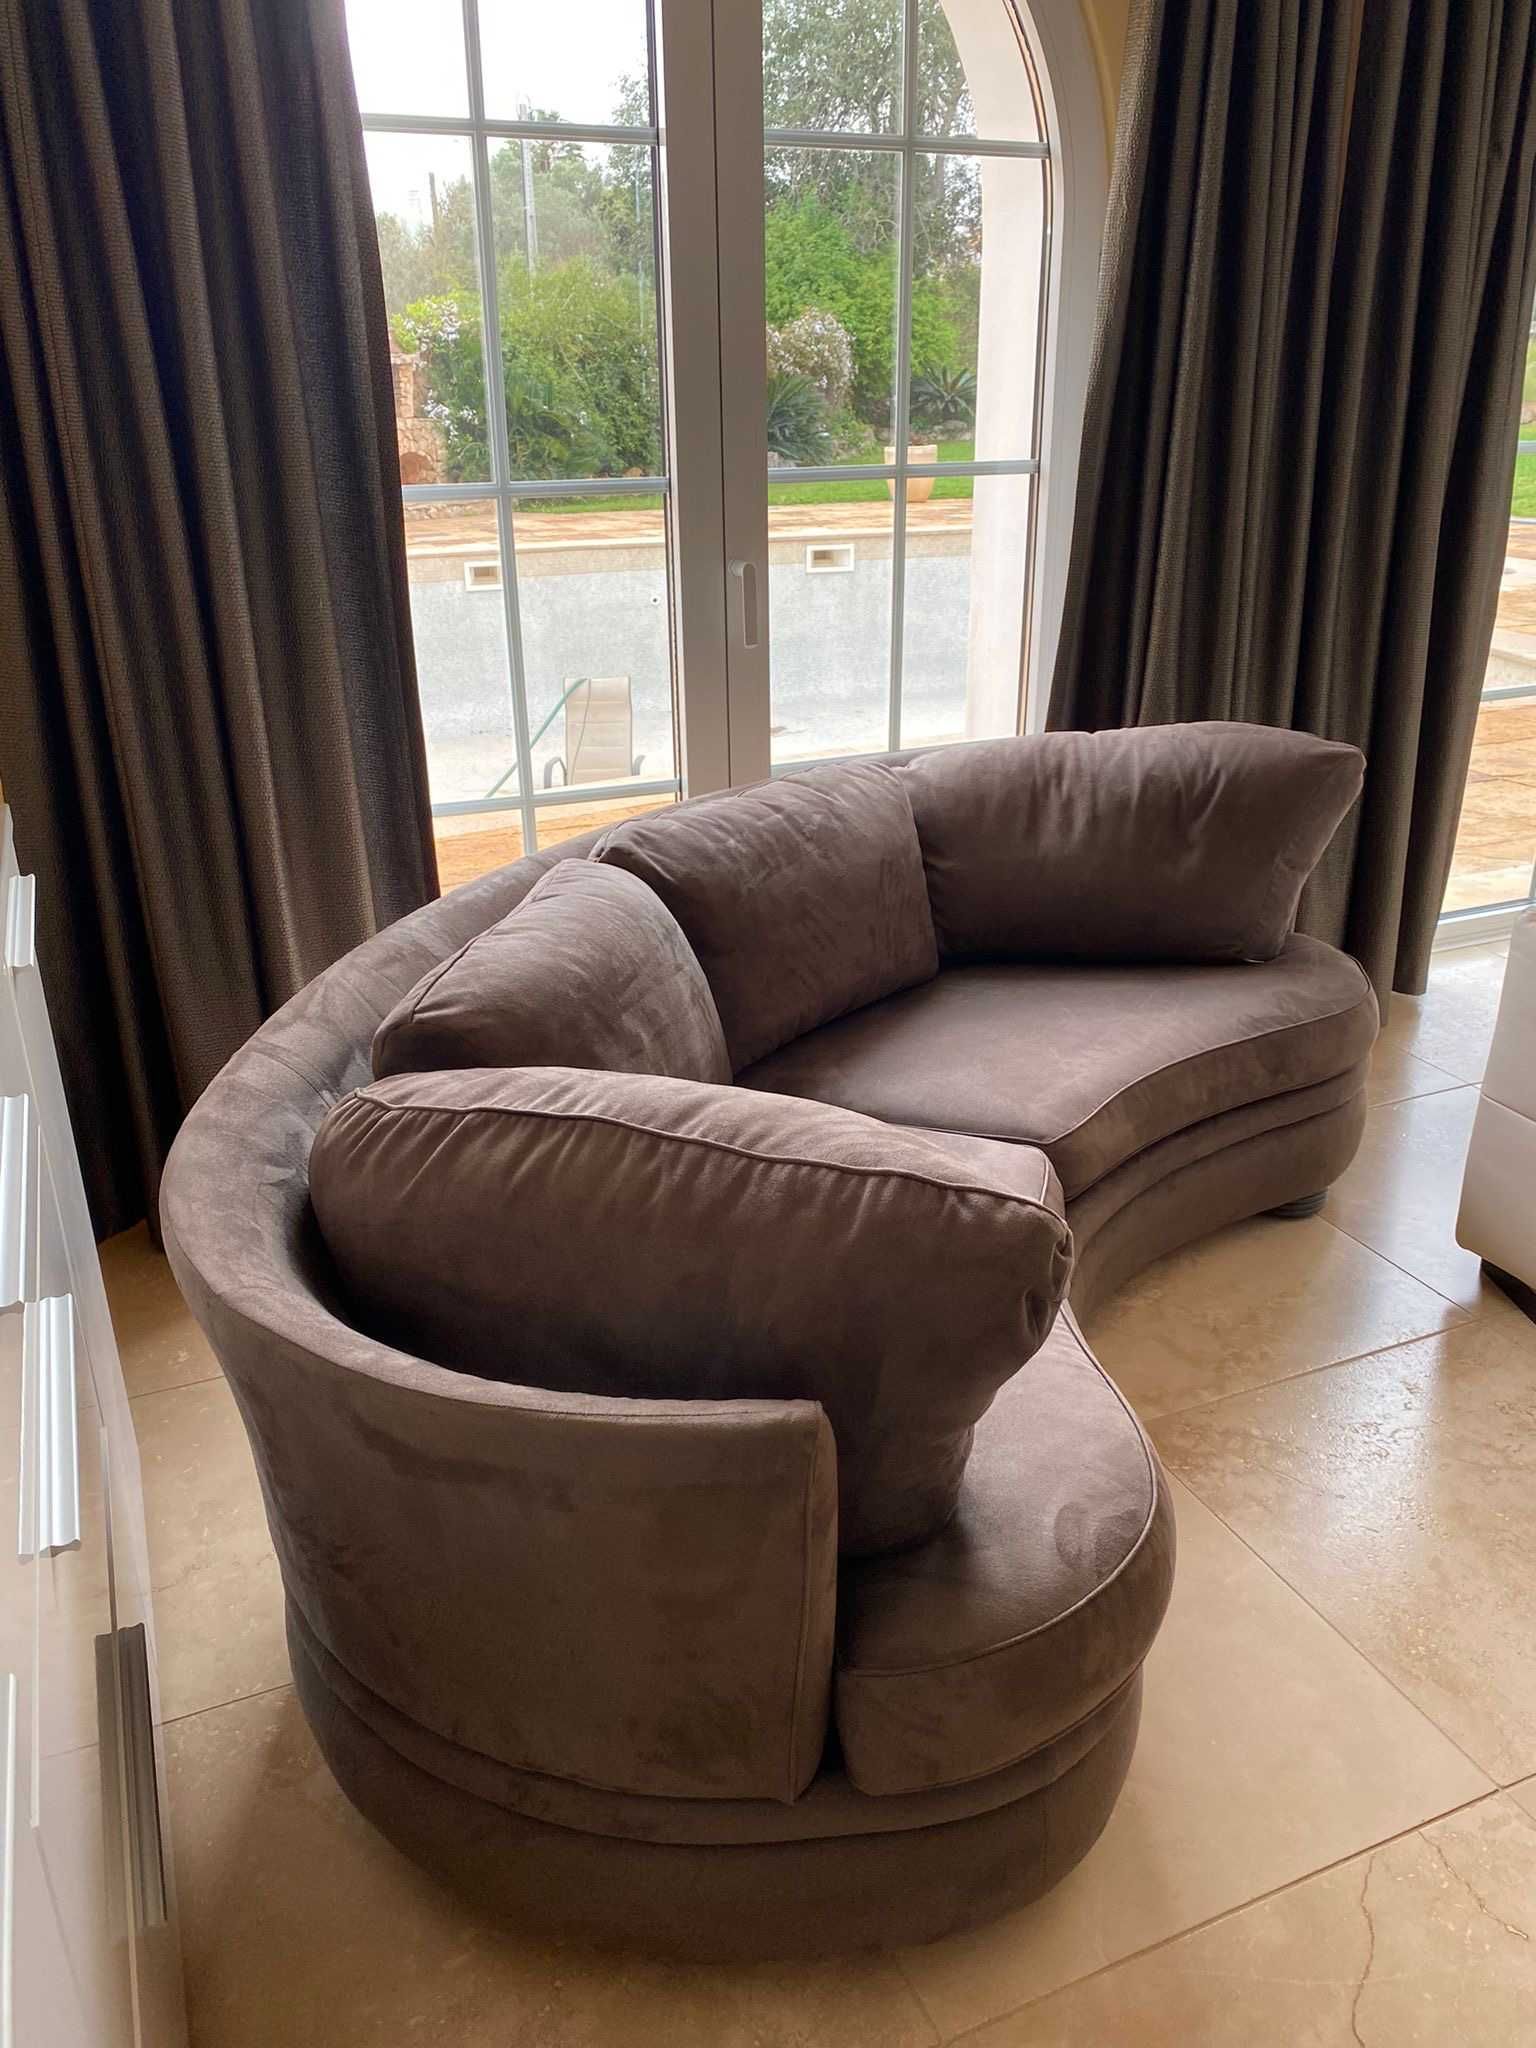 Designer Sofa perfect condition